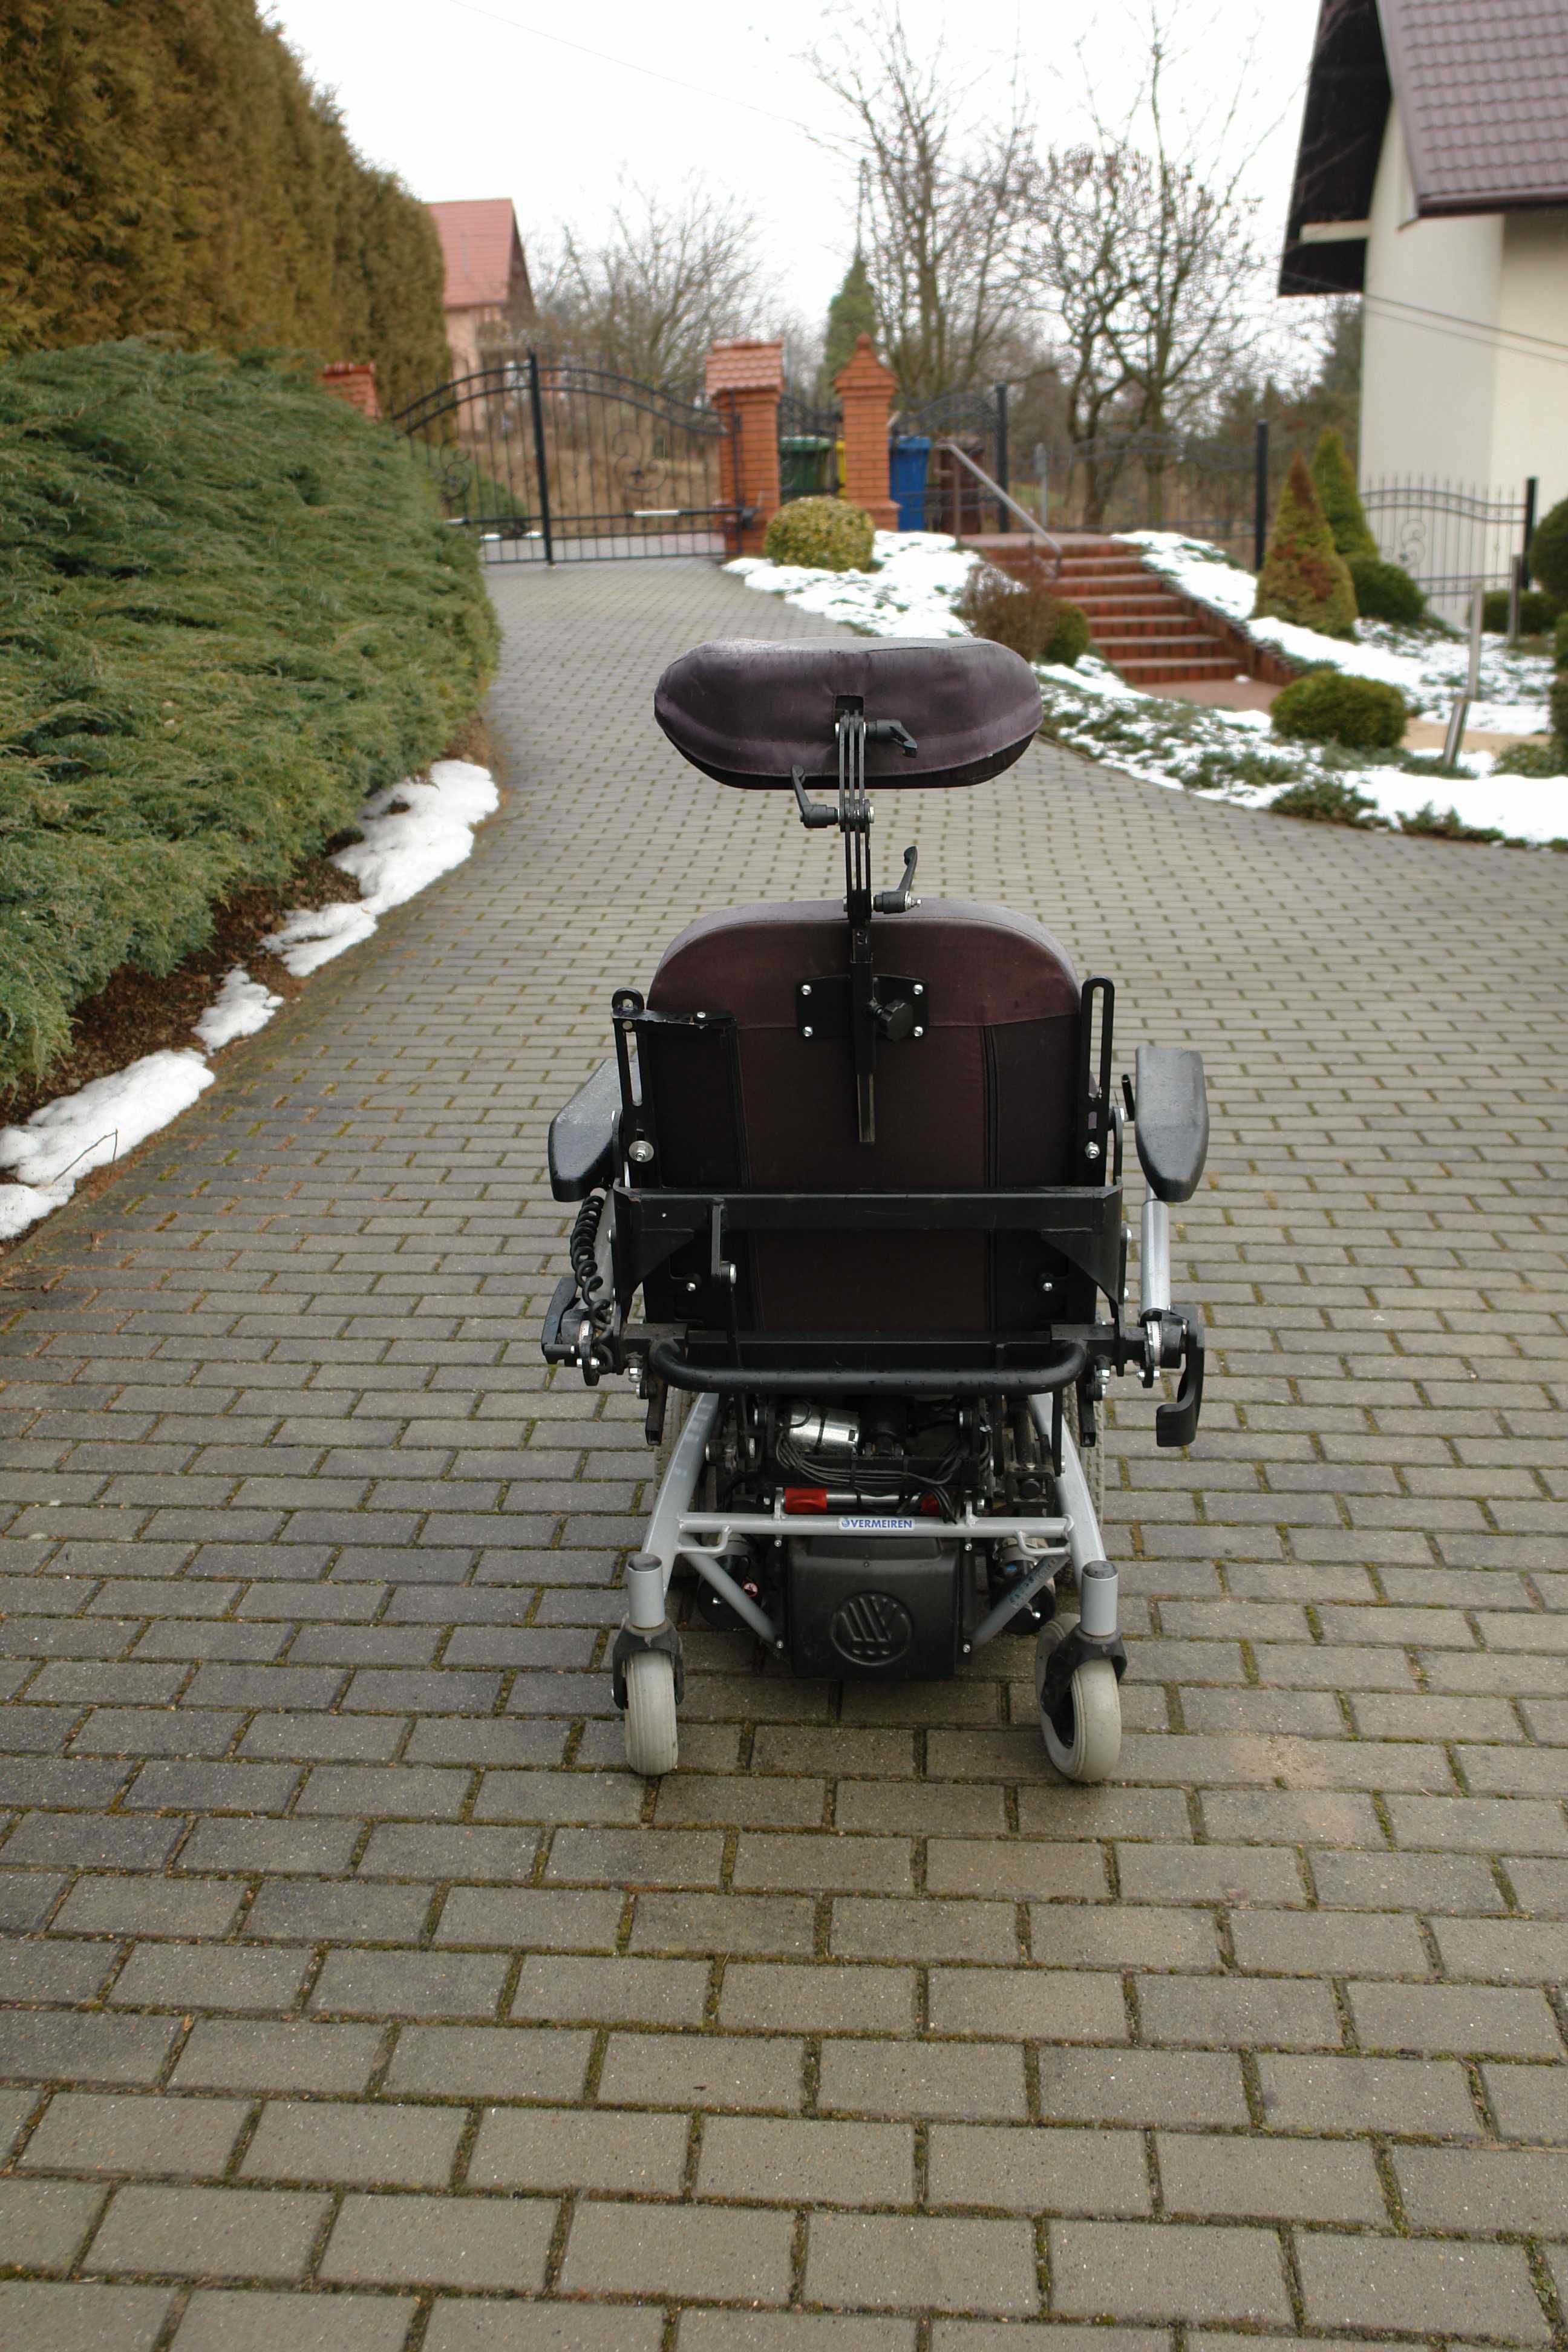 Wielofunkcyjny elektryczny wózek inwalidzki